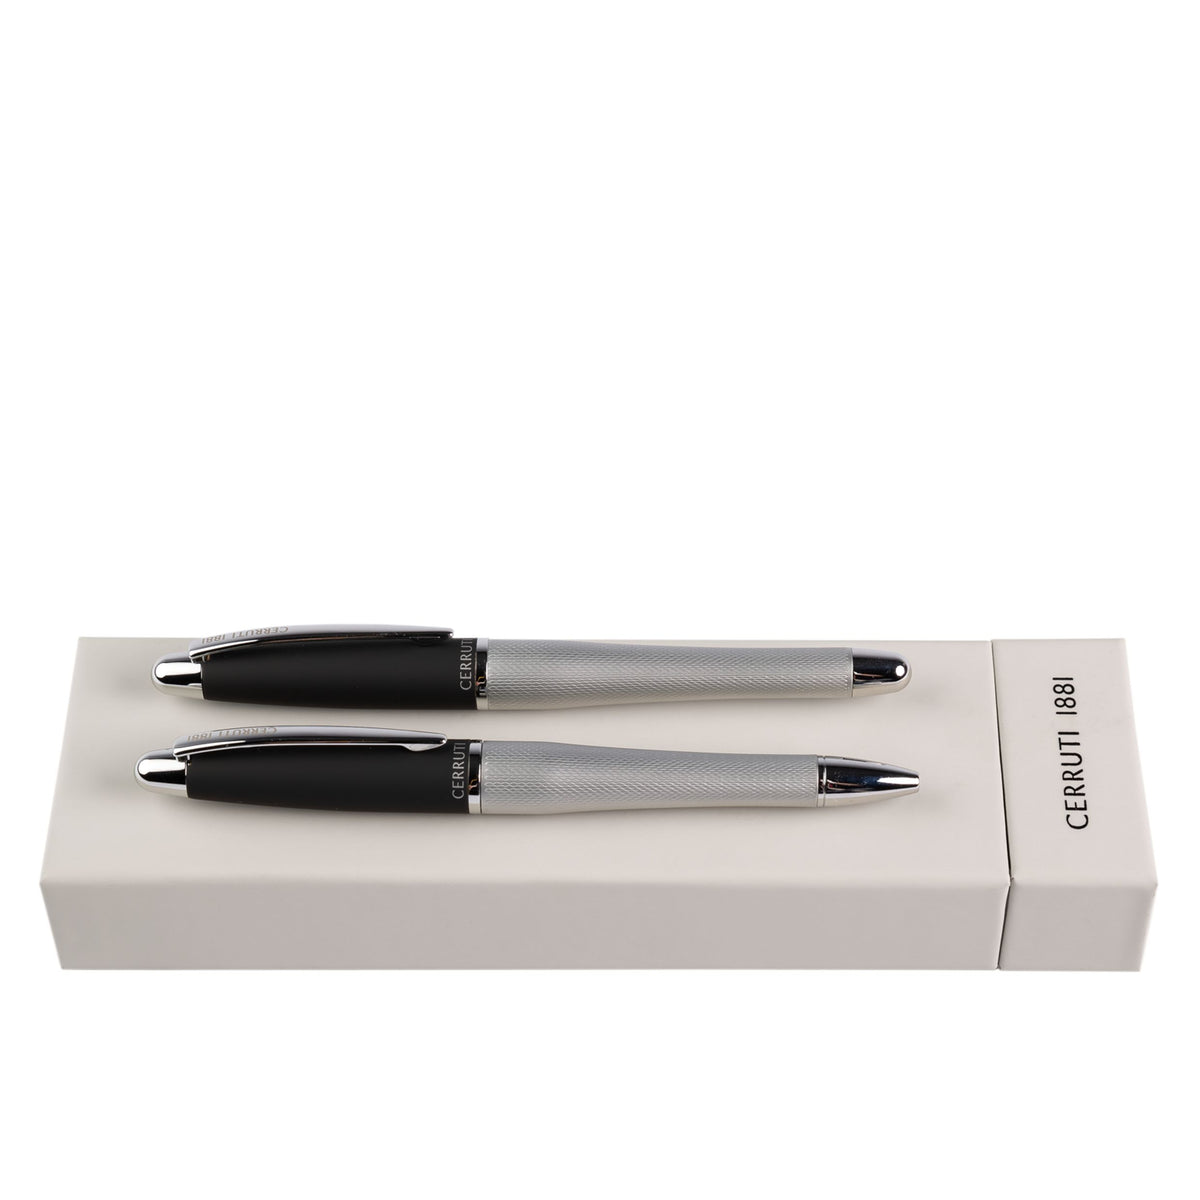 CERRUTI 1881 Pen Gift Set Oat for him | ballpoint pen & fountain pen ...